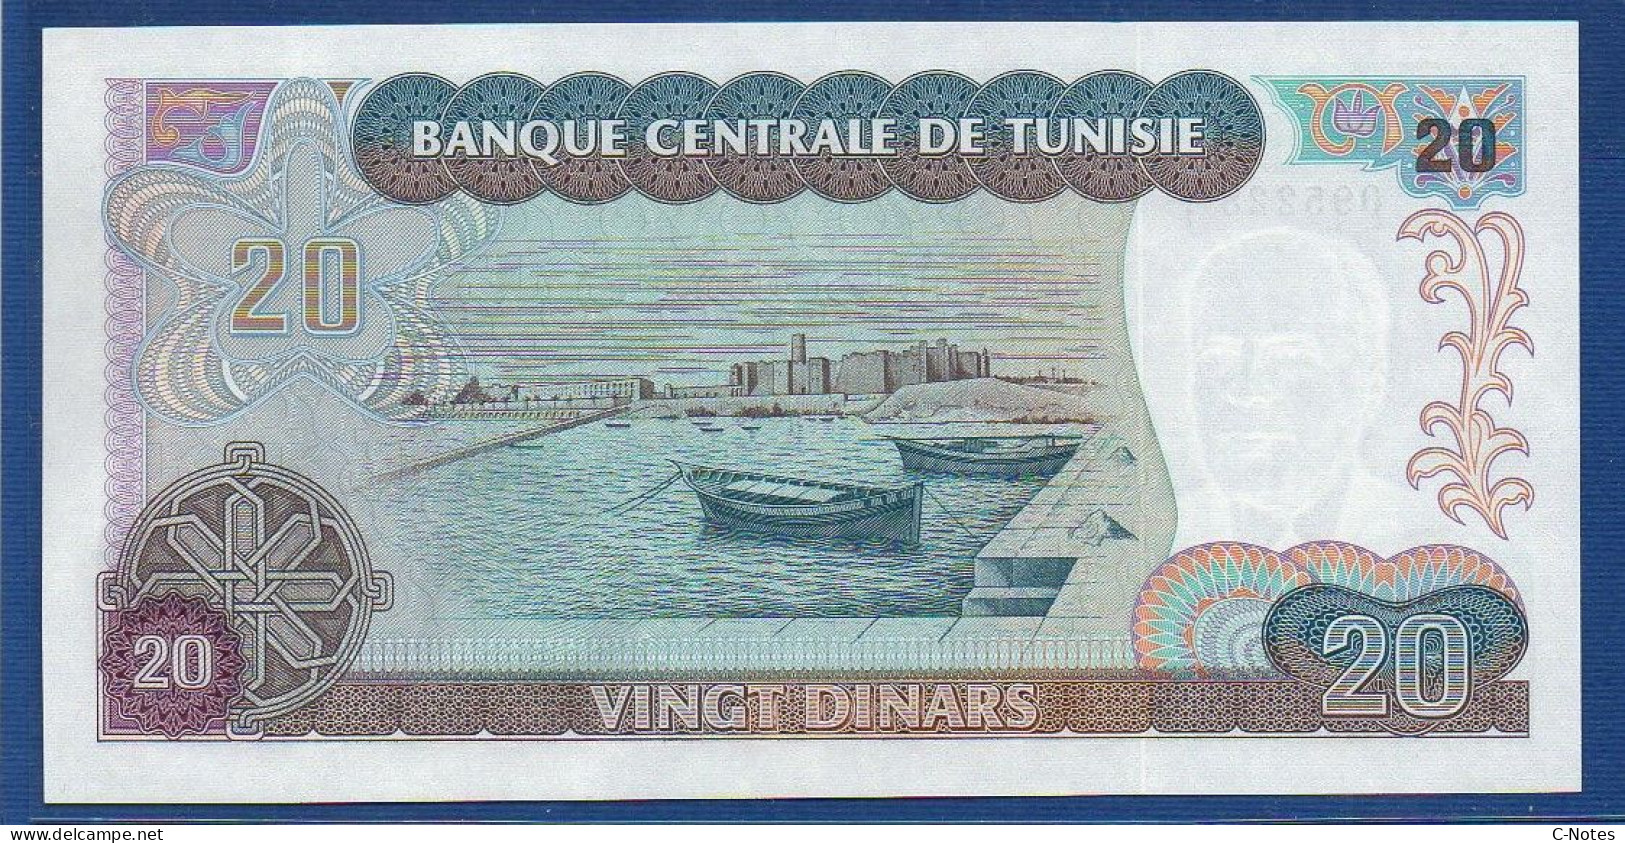 TUNISIA - P.77 – 20 Dinars 1980 UNC, S/n F/1 095228 - Tunisie